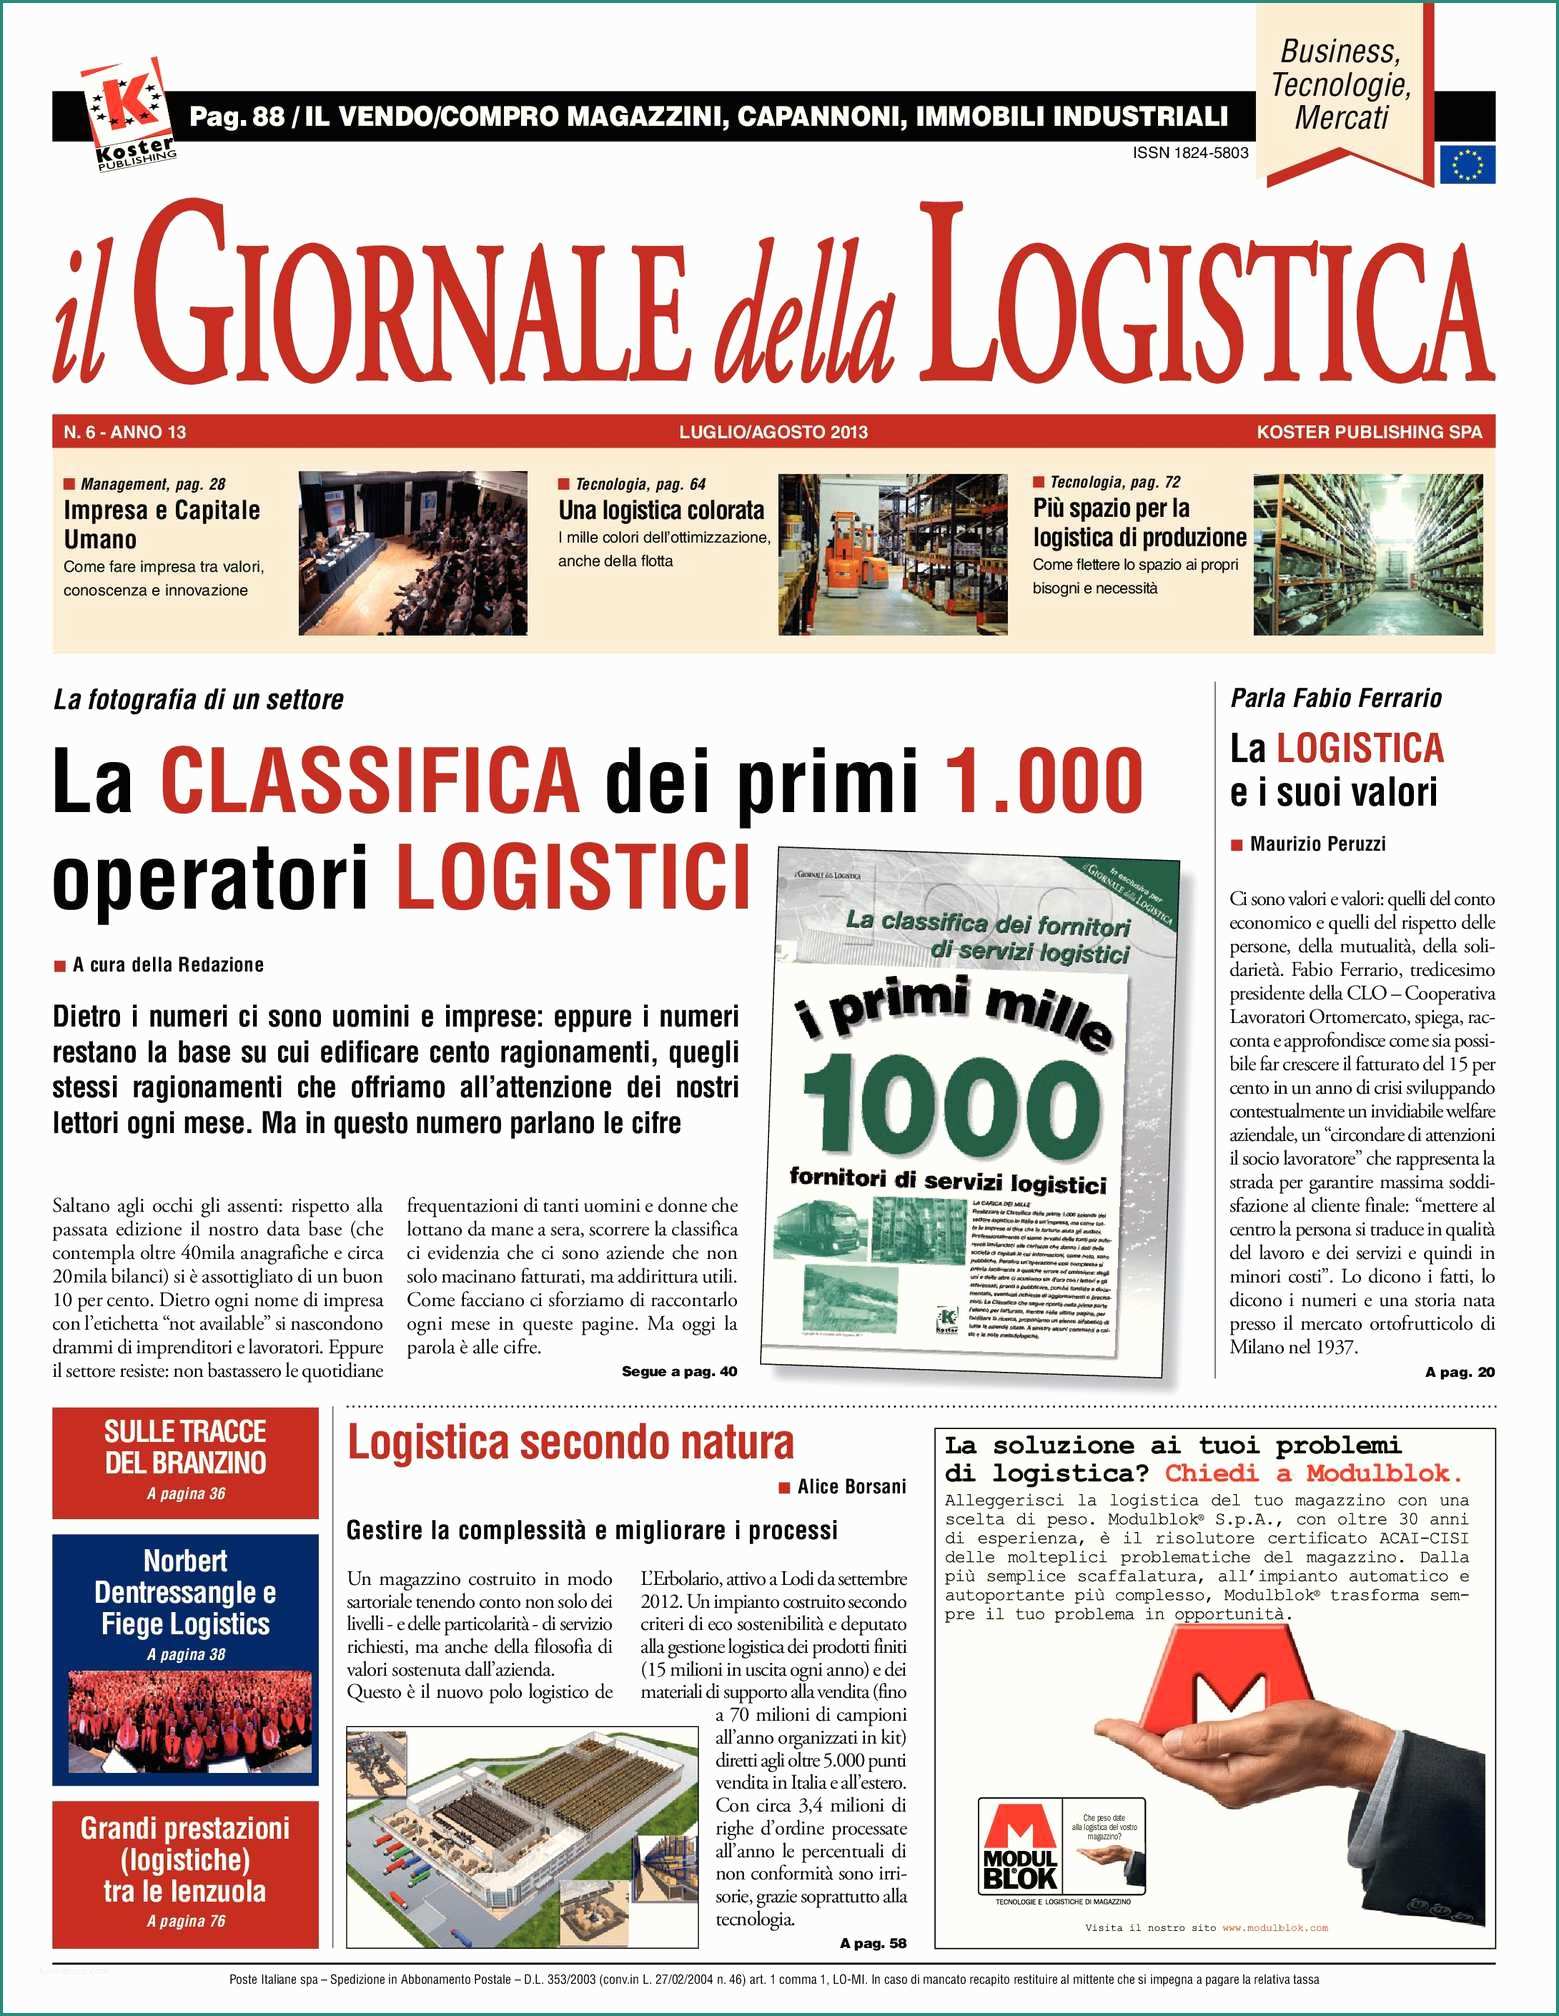 Scaffalature Metalliche Leroy Merlin E Calaméo Il Giornale Della Logistica Luglio Agosto 2013